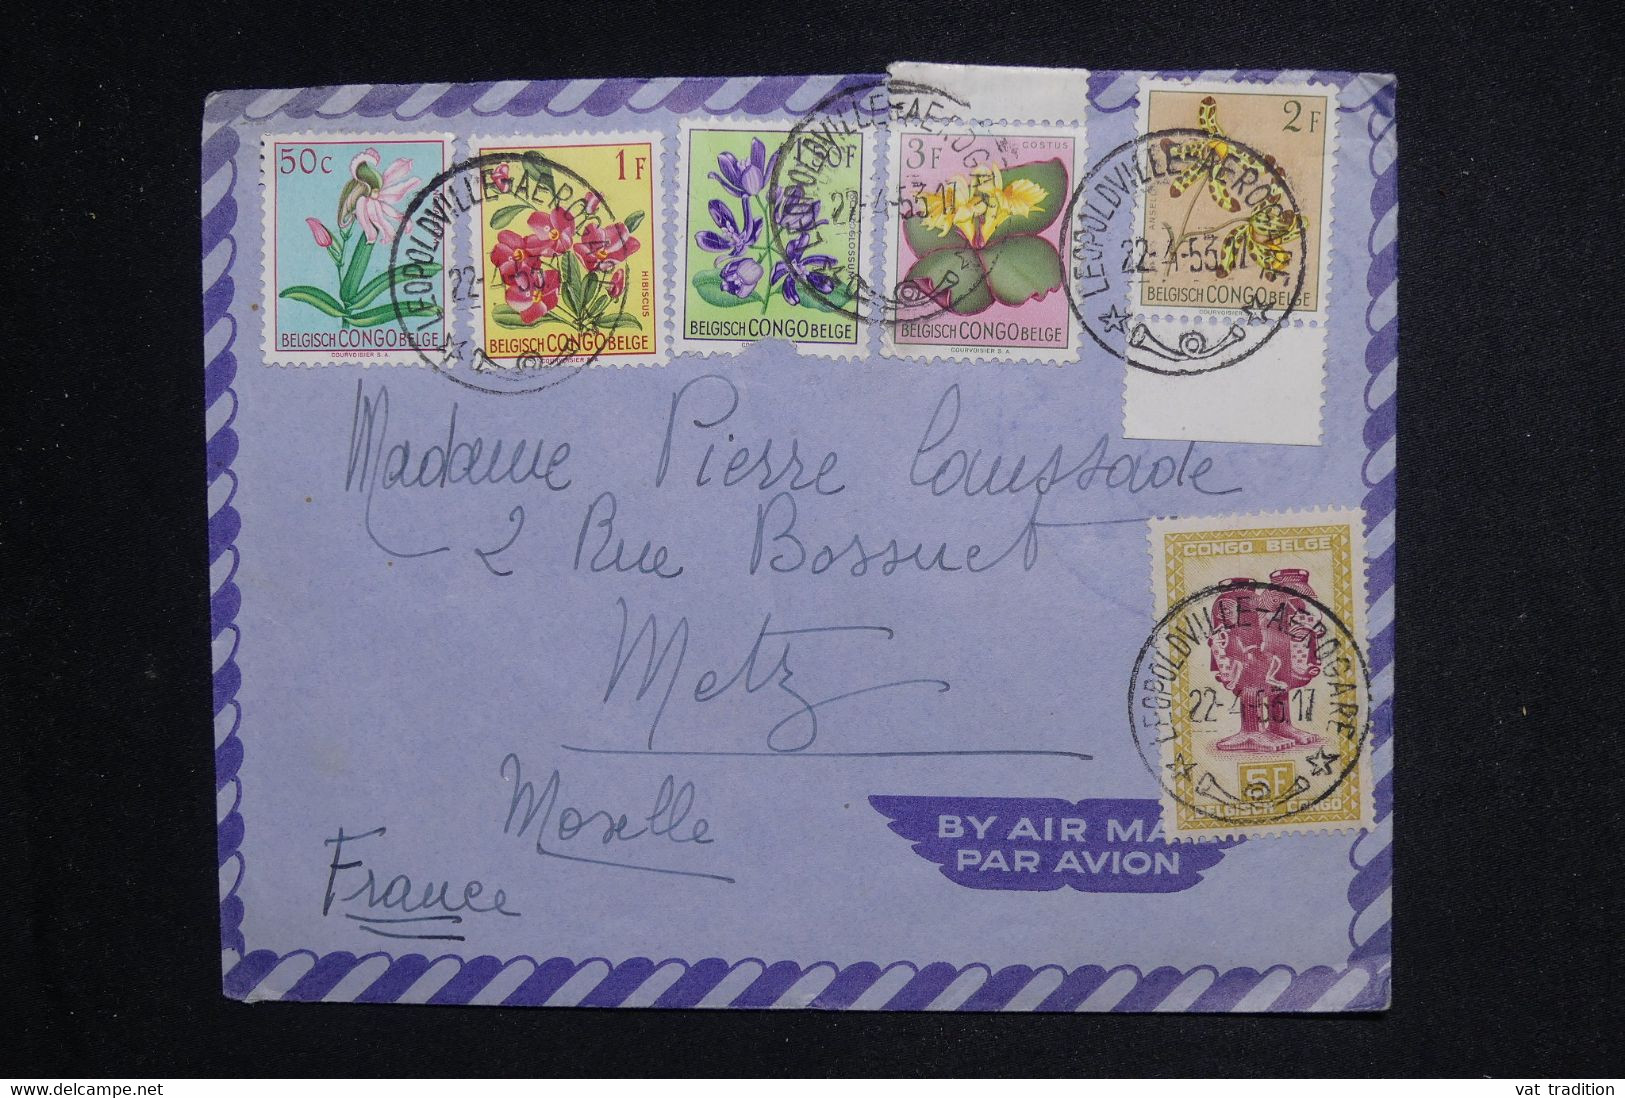 CONGO BELGE - Enveloppe De Leopoldville Pour La France En 1953, Affranchissement Varié - L 128689 - Covers & Documents